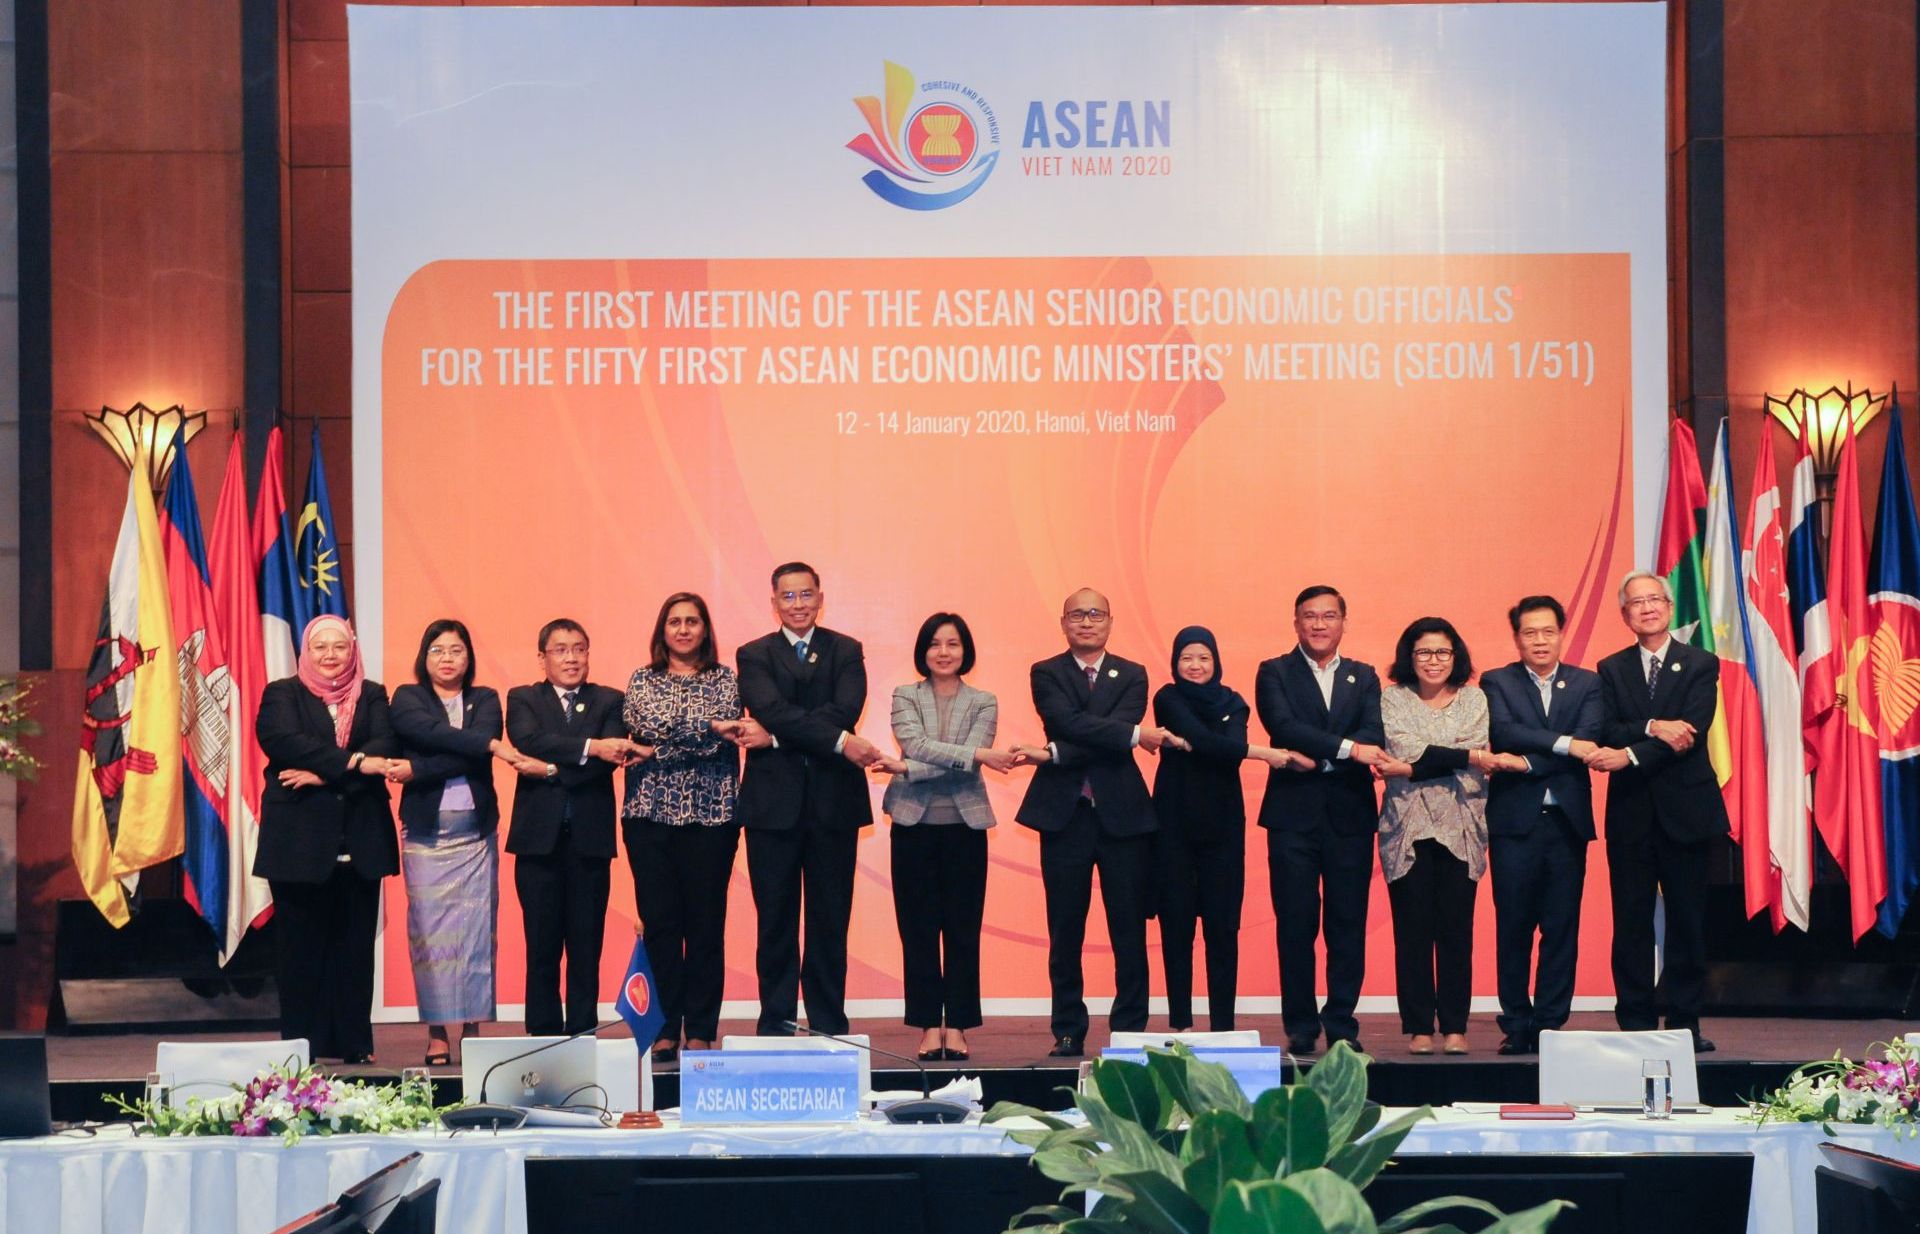 Ba định hướng ưu tiên trong trụ cột kinh tế ASEAN năm 2020